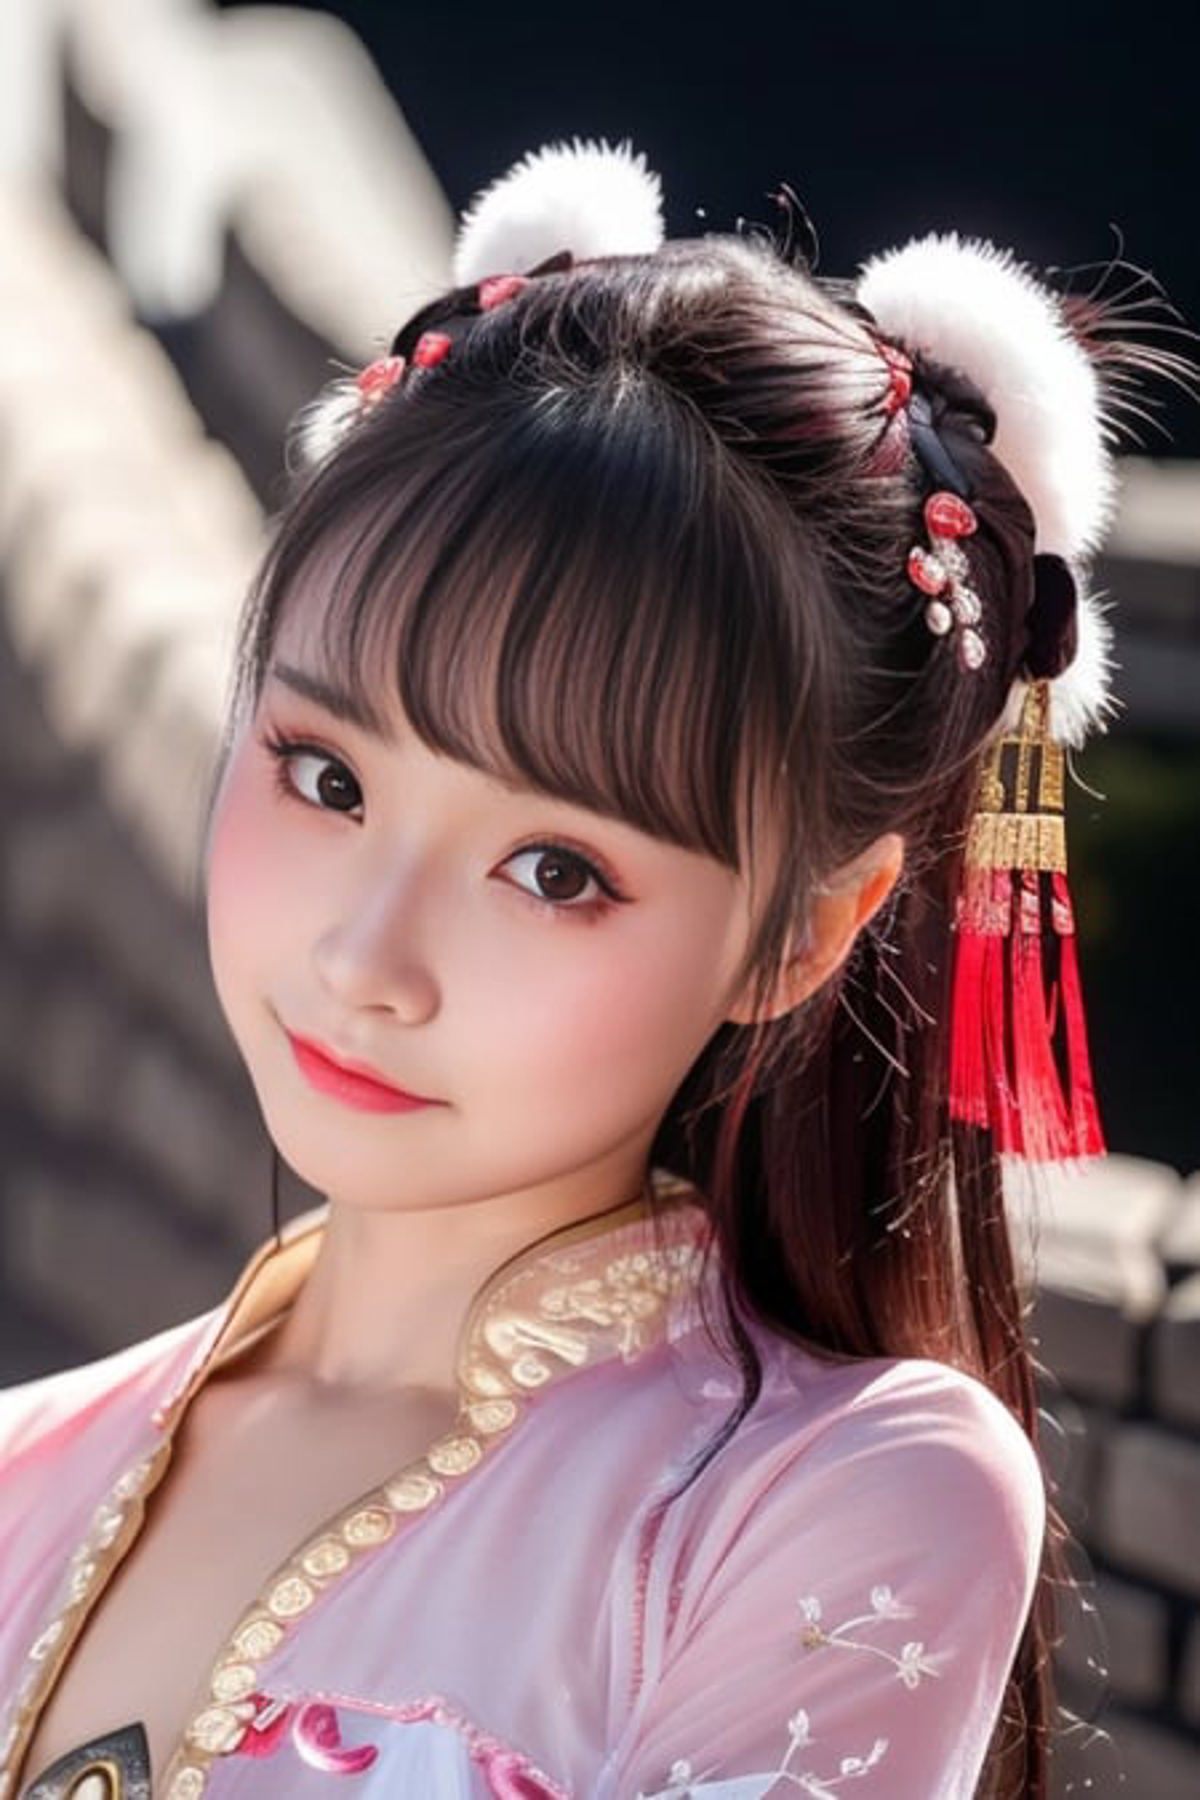 Little Fairy Xiao-Dan / 晓丹小仙女 - v1.0, Stable Diffusion LoRA